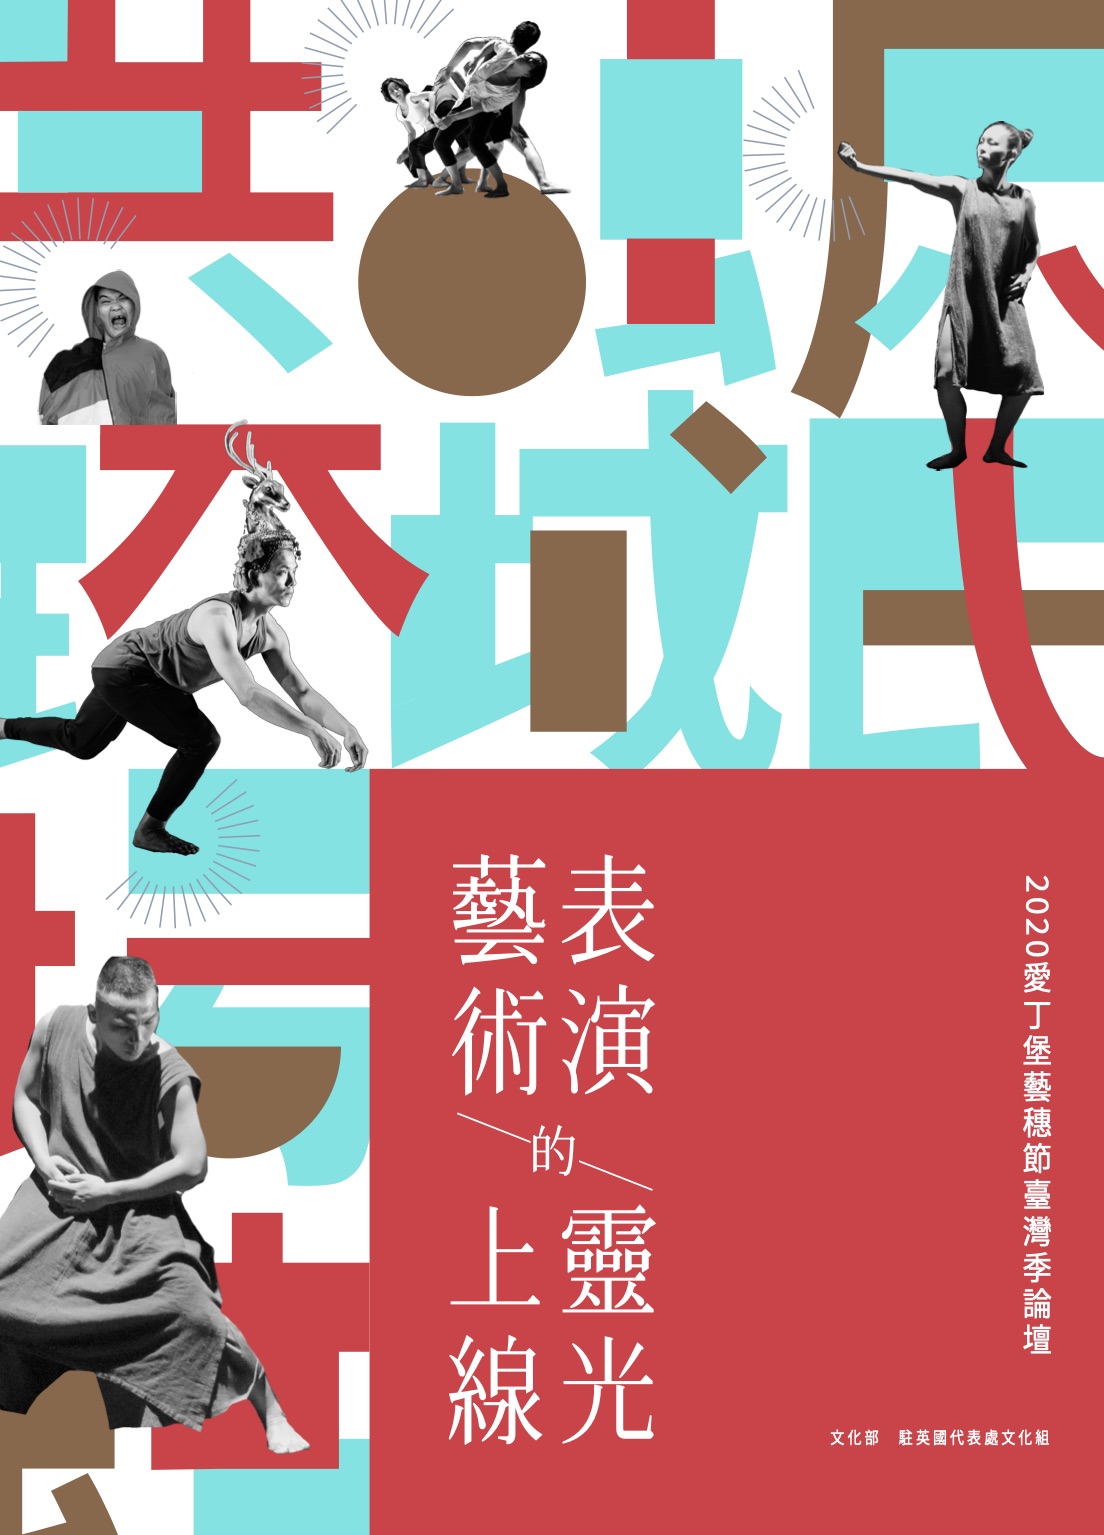 表演藝術的靈光上線-2020愛丁堡藝穗節臺灣季論壇